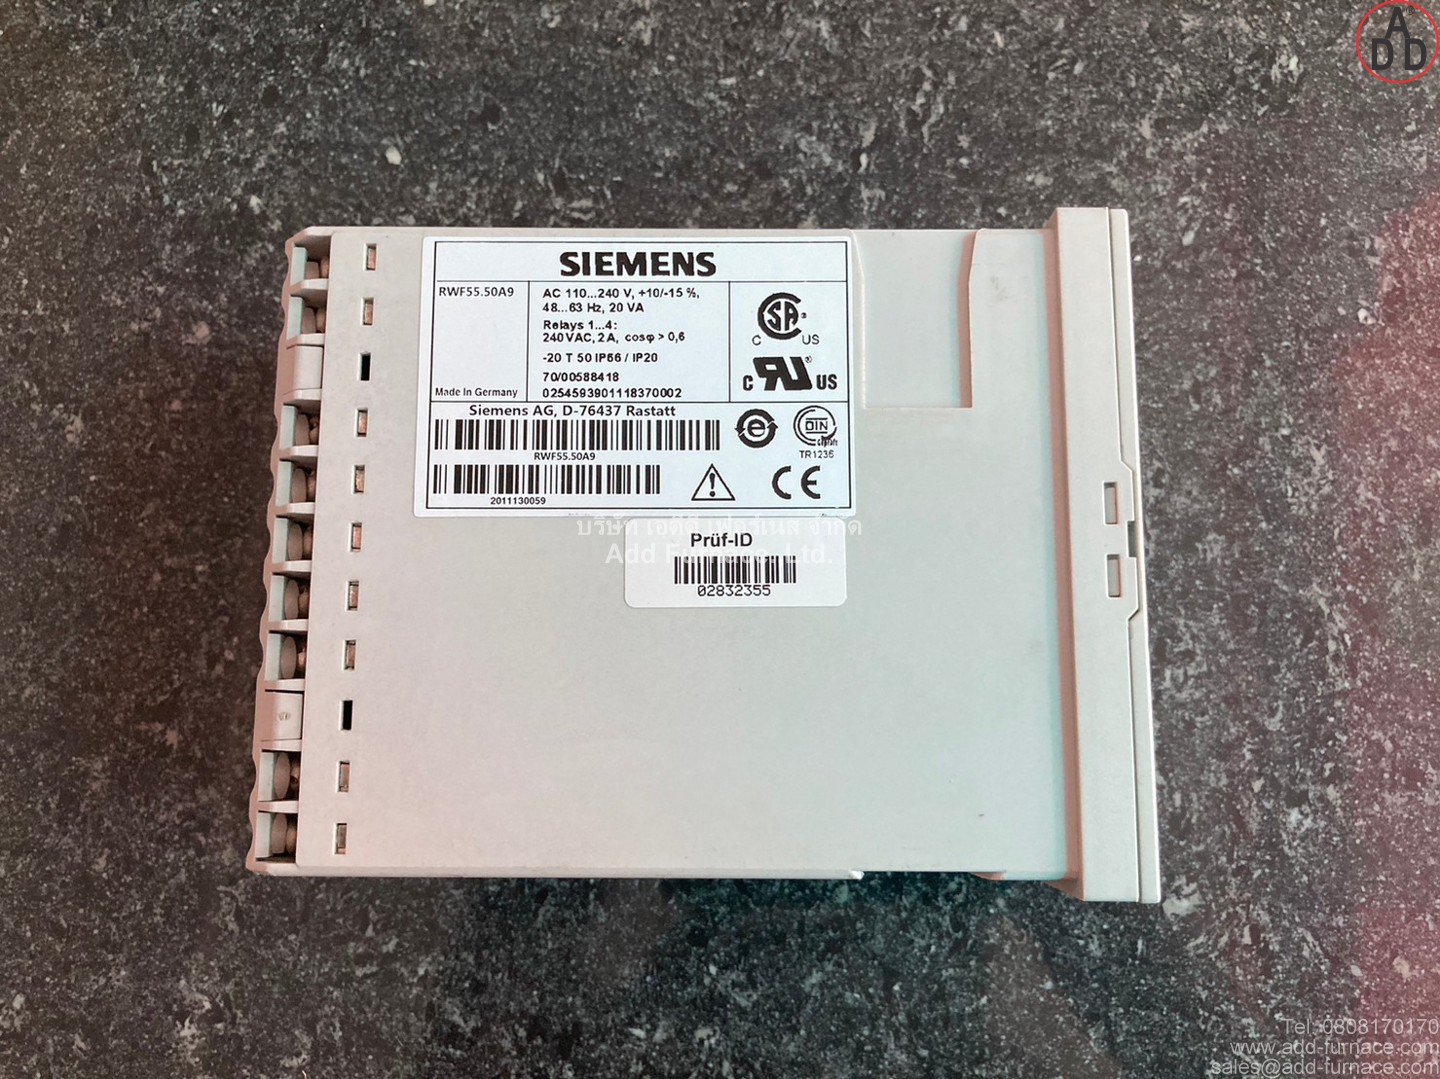 Siemens RWF55.50A9 (16)